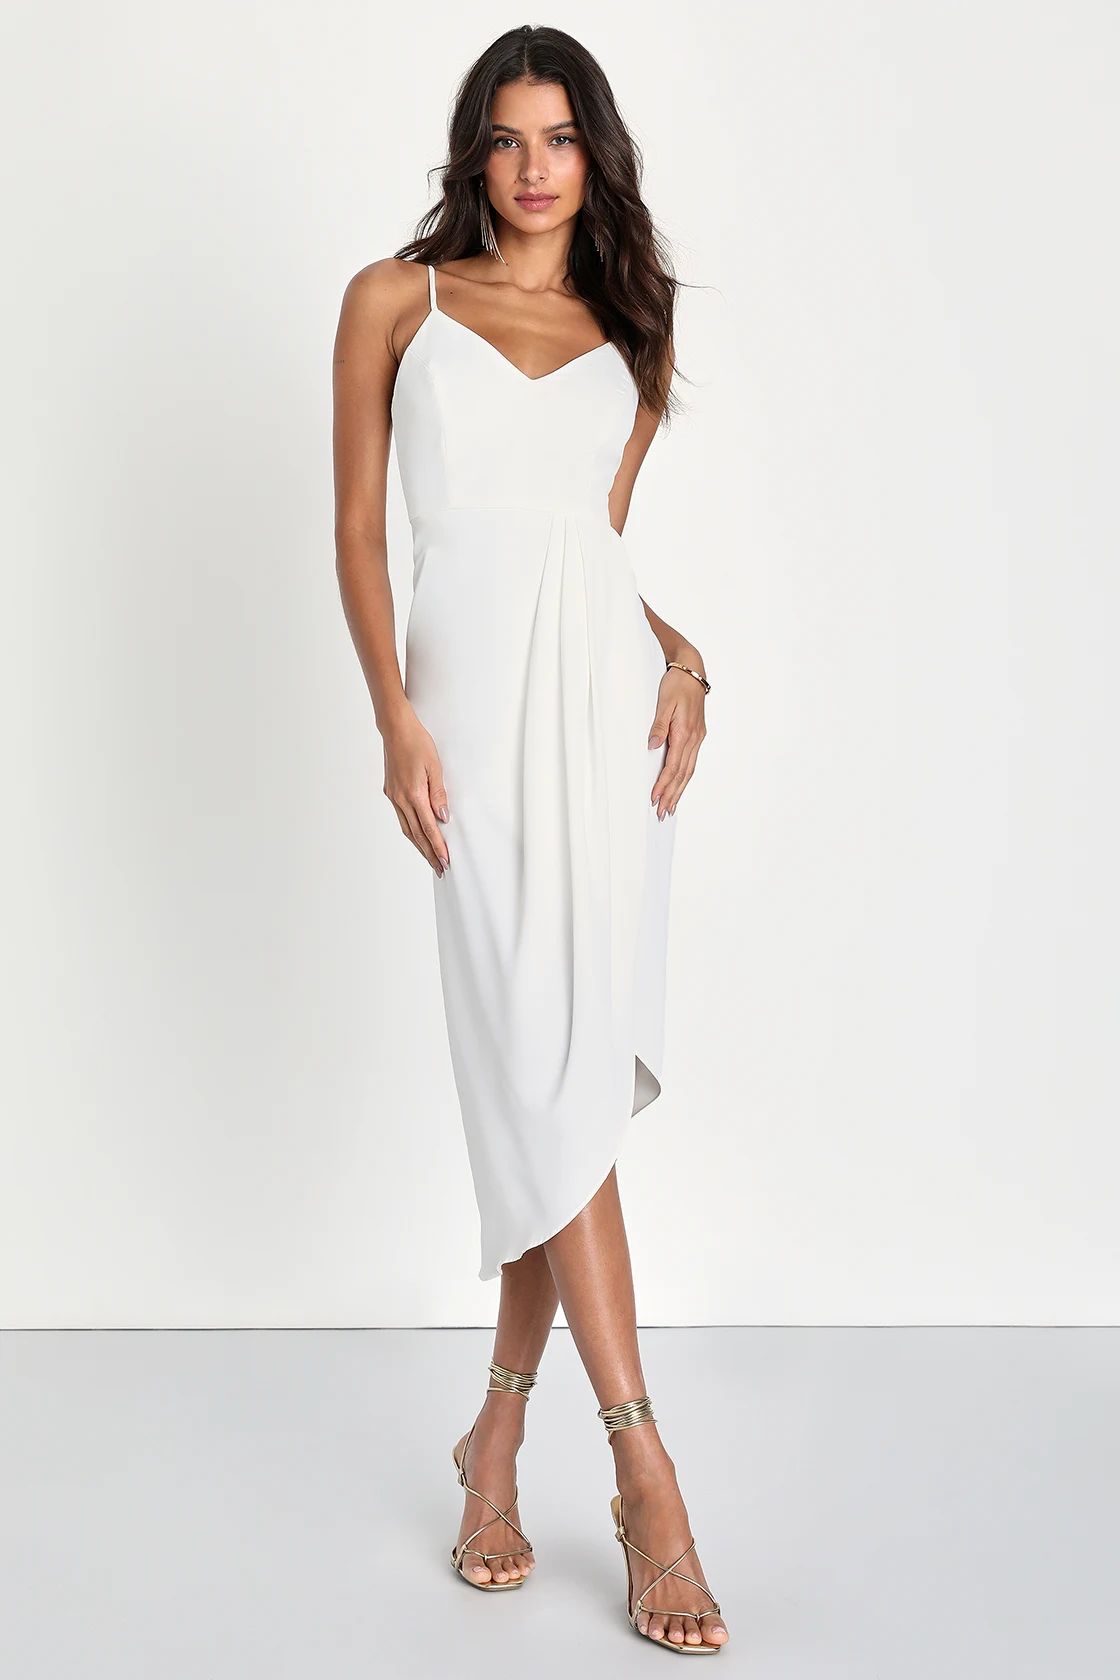 Reinette White Midi Dress | Lulus (US)